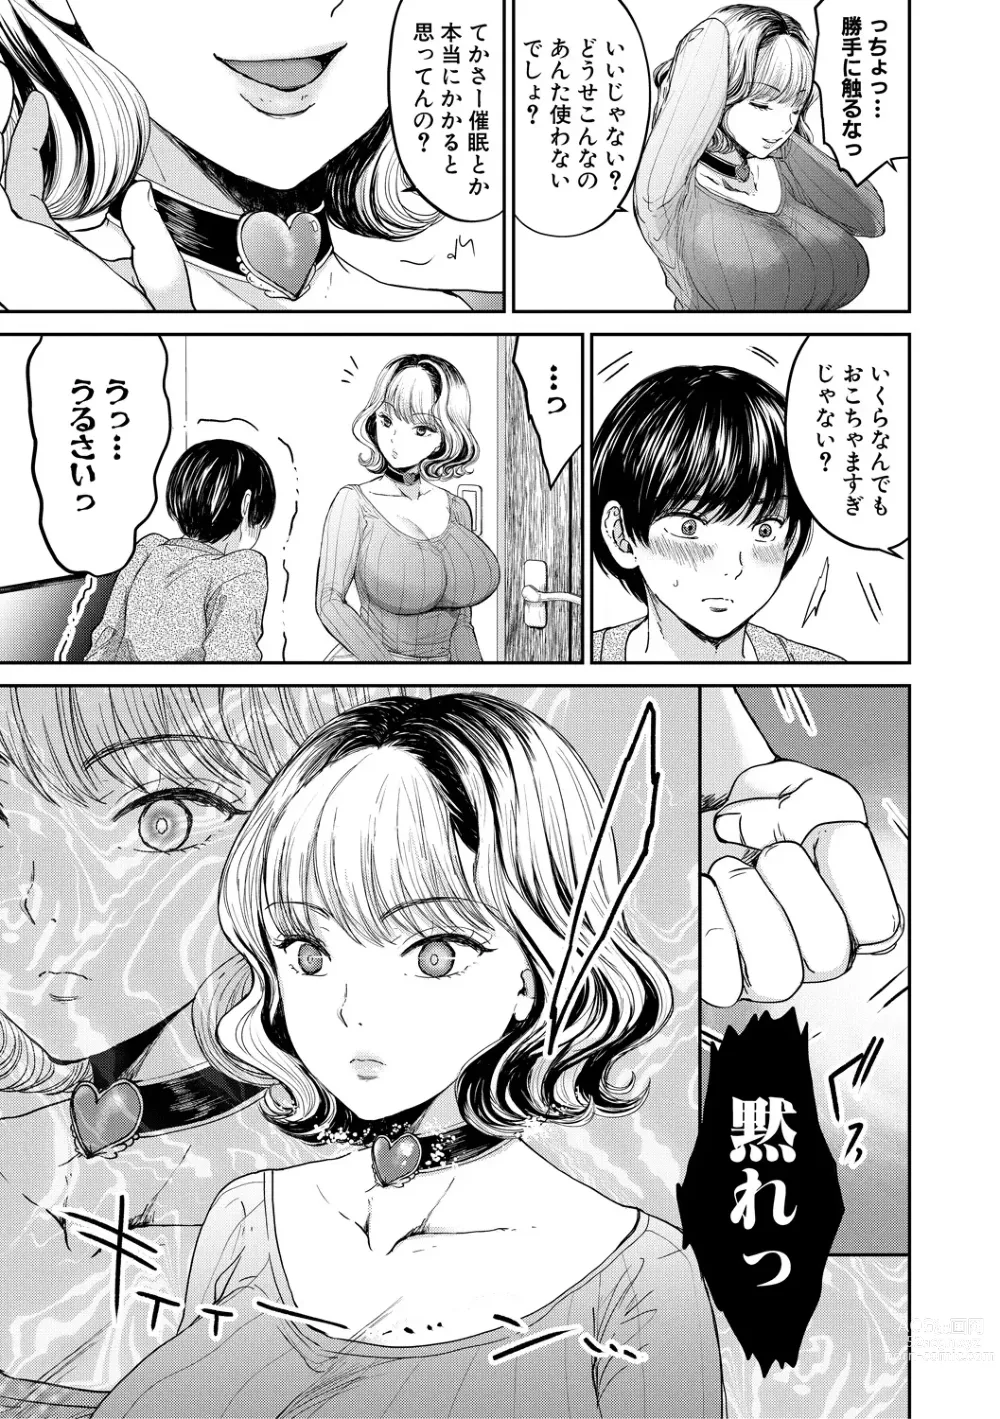 Page 7 of manga Shiborikiri Ane Body